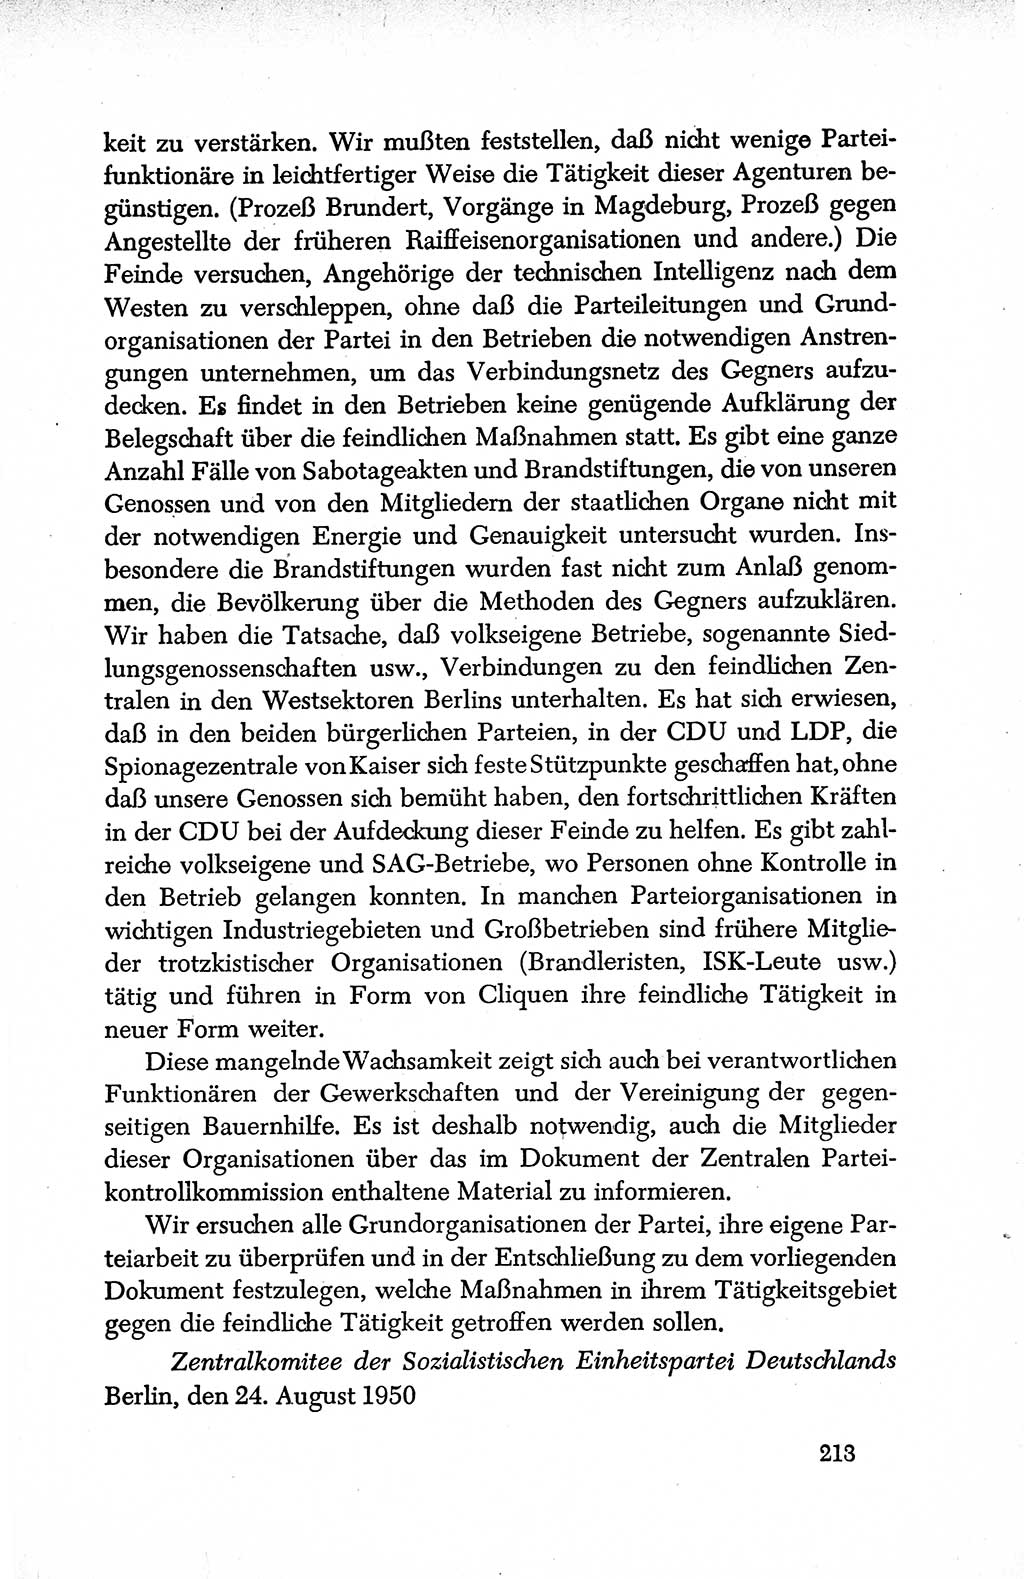 Dokumente der Sozialistischen Einheitspartei Deutschlands (SED) [Deutsche Demokratische Republik (DDR)] 1950-1952, Seite 213 (Dok. SED DDR 1950-1952, S. 213)